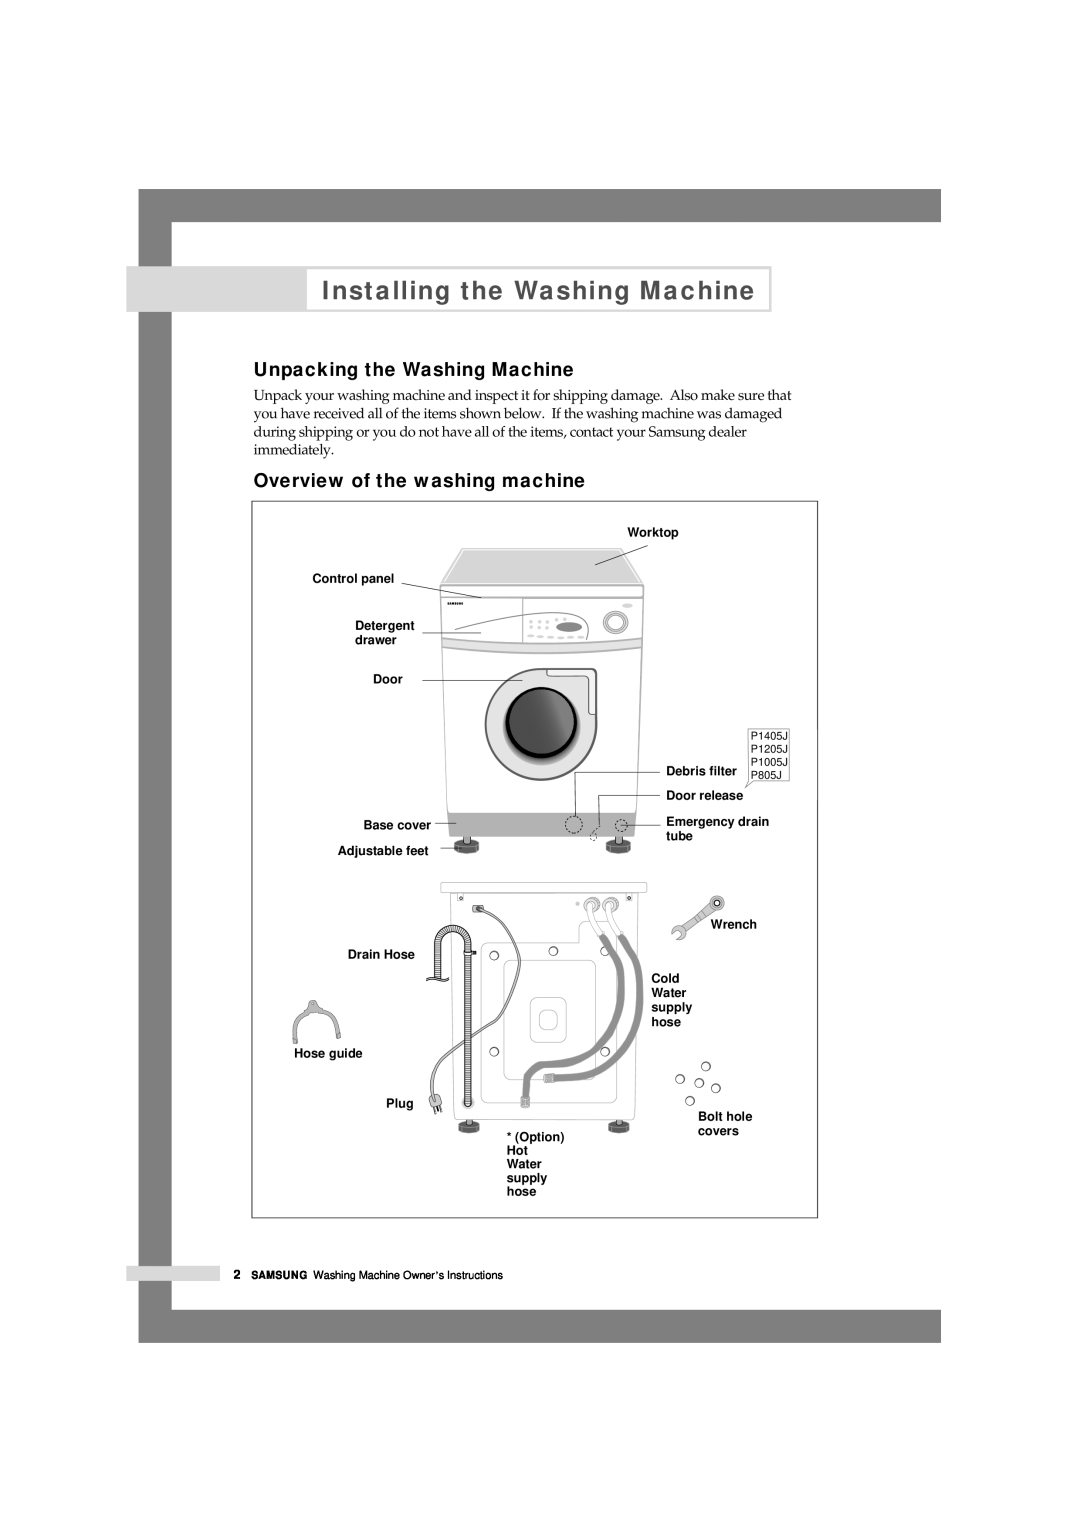 Samsung P1205J, P805J, P803J Installing the Washing Machine, Unpacking the Washing Machine, Overview of the washing machine 